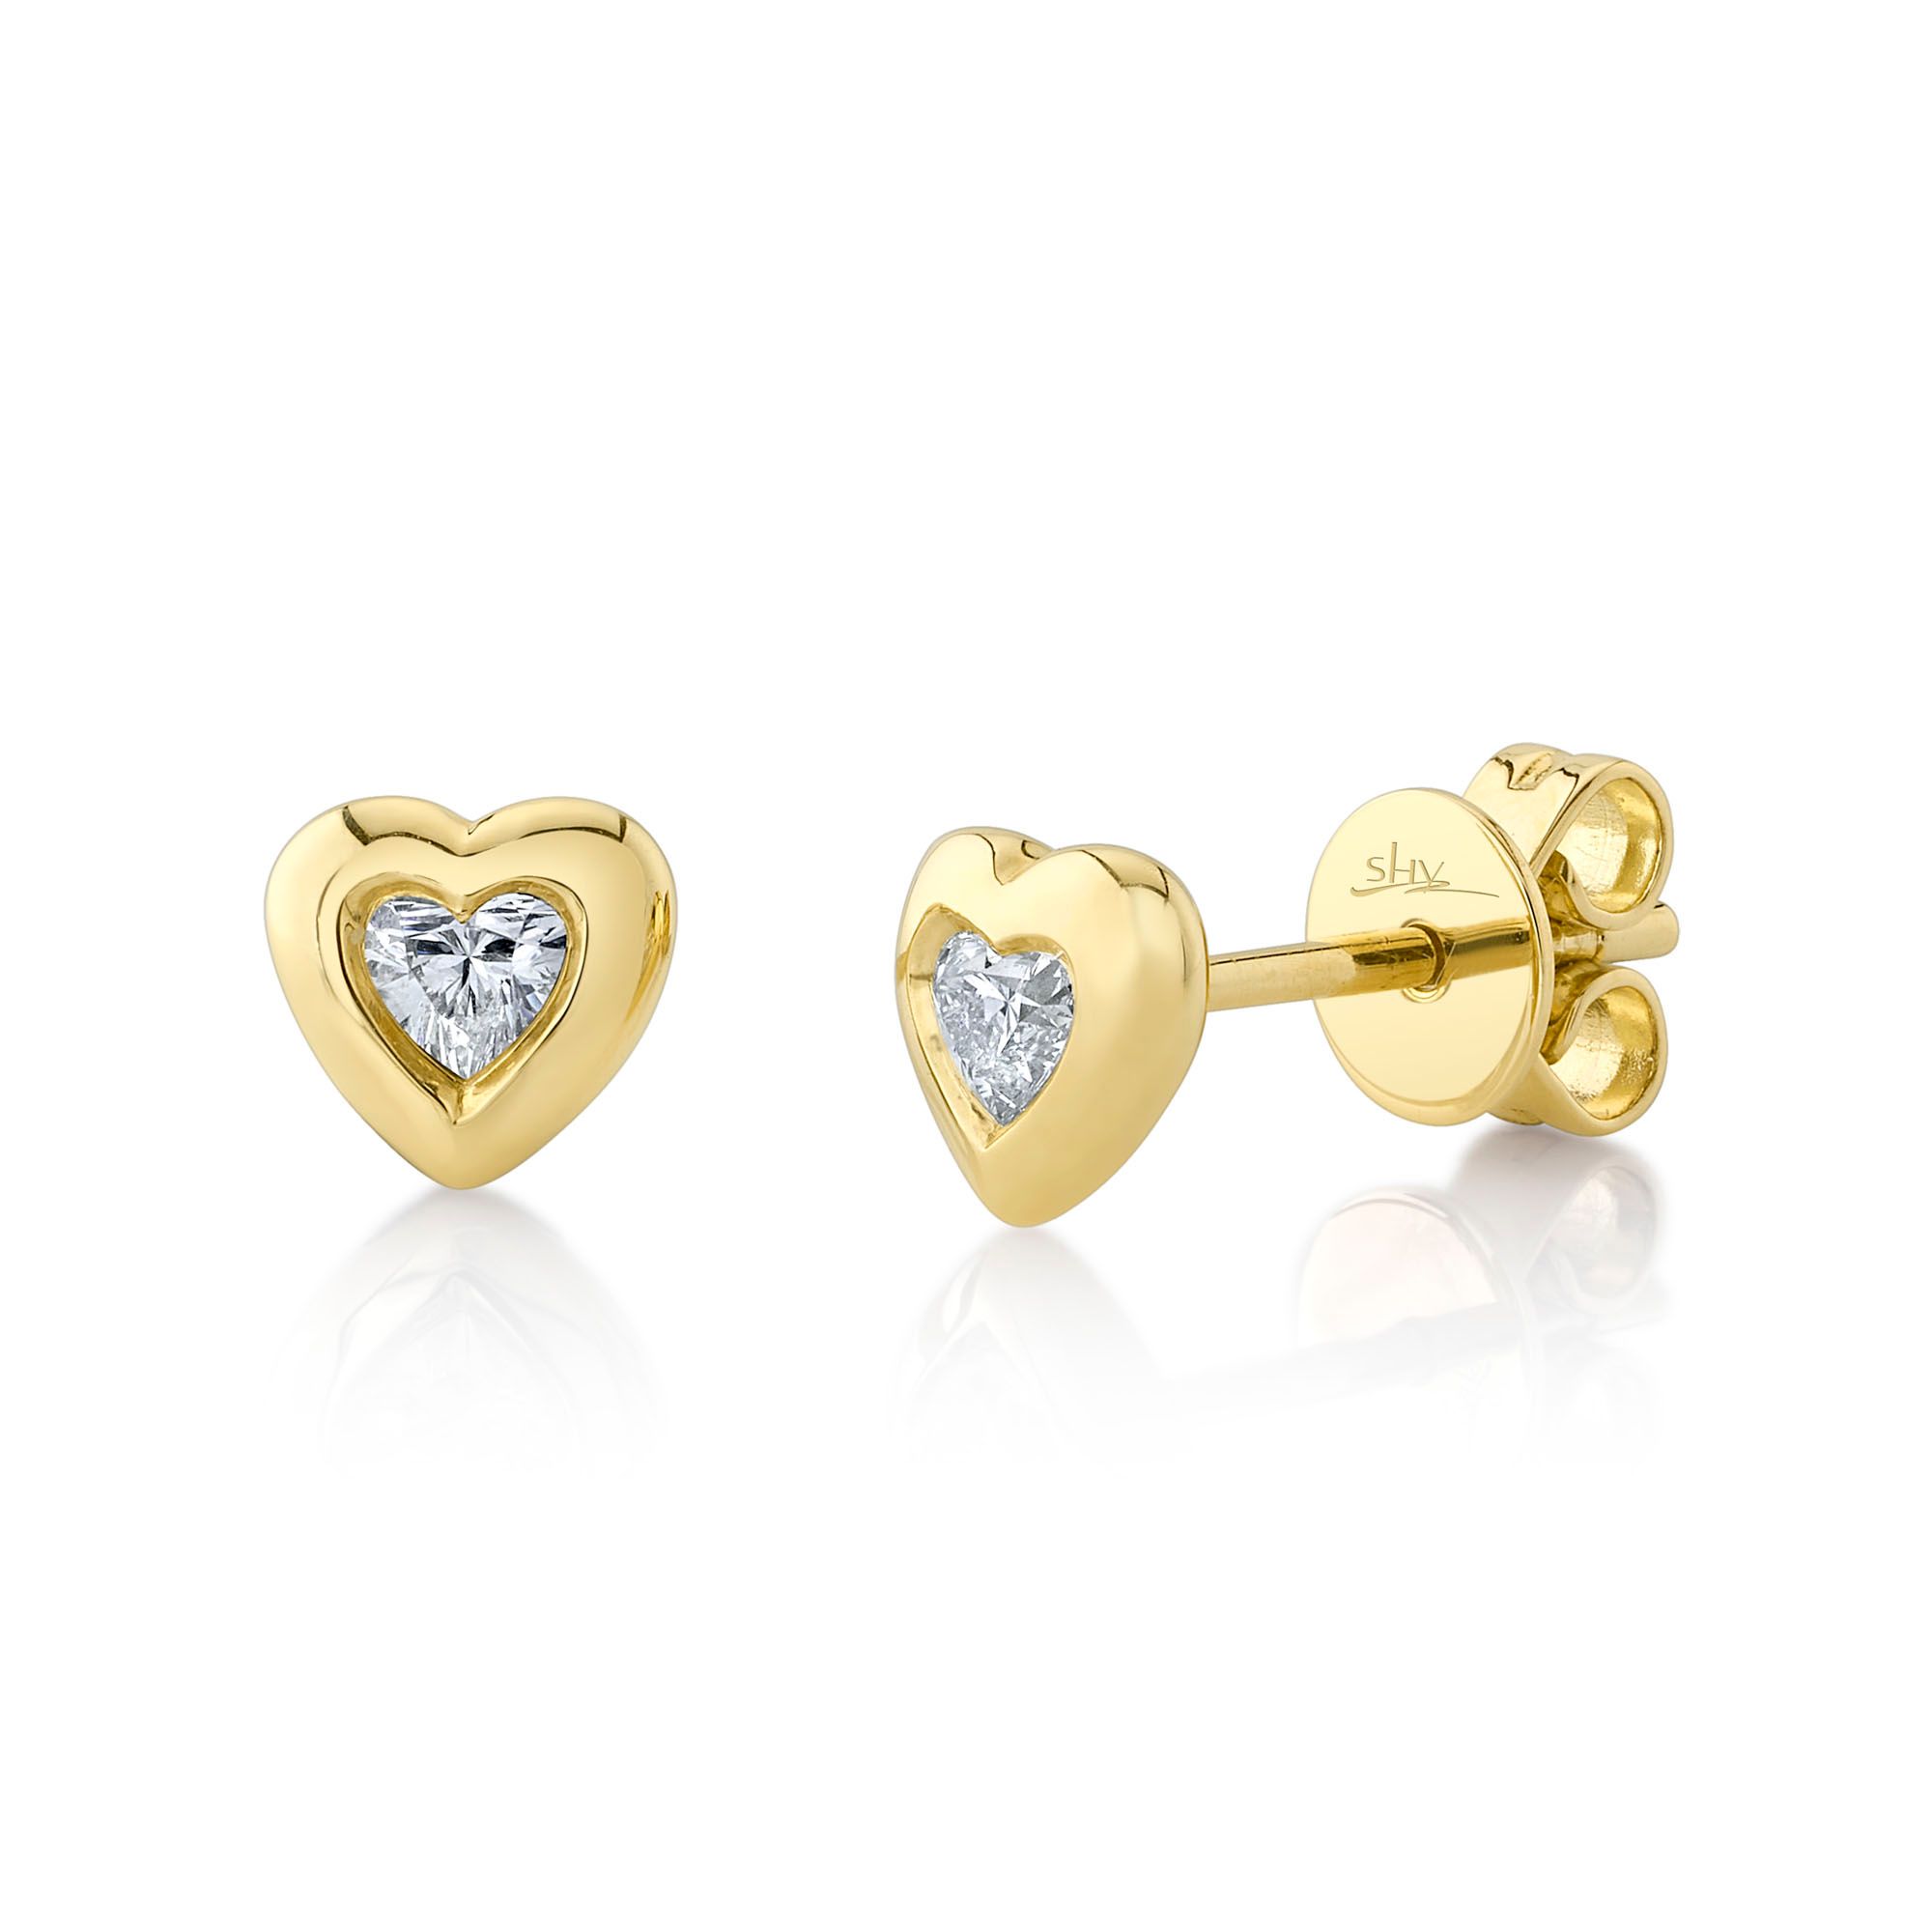 157219Diamond Heart Stud Earrings